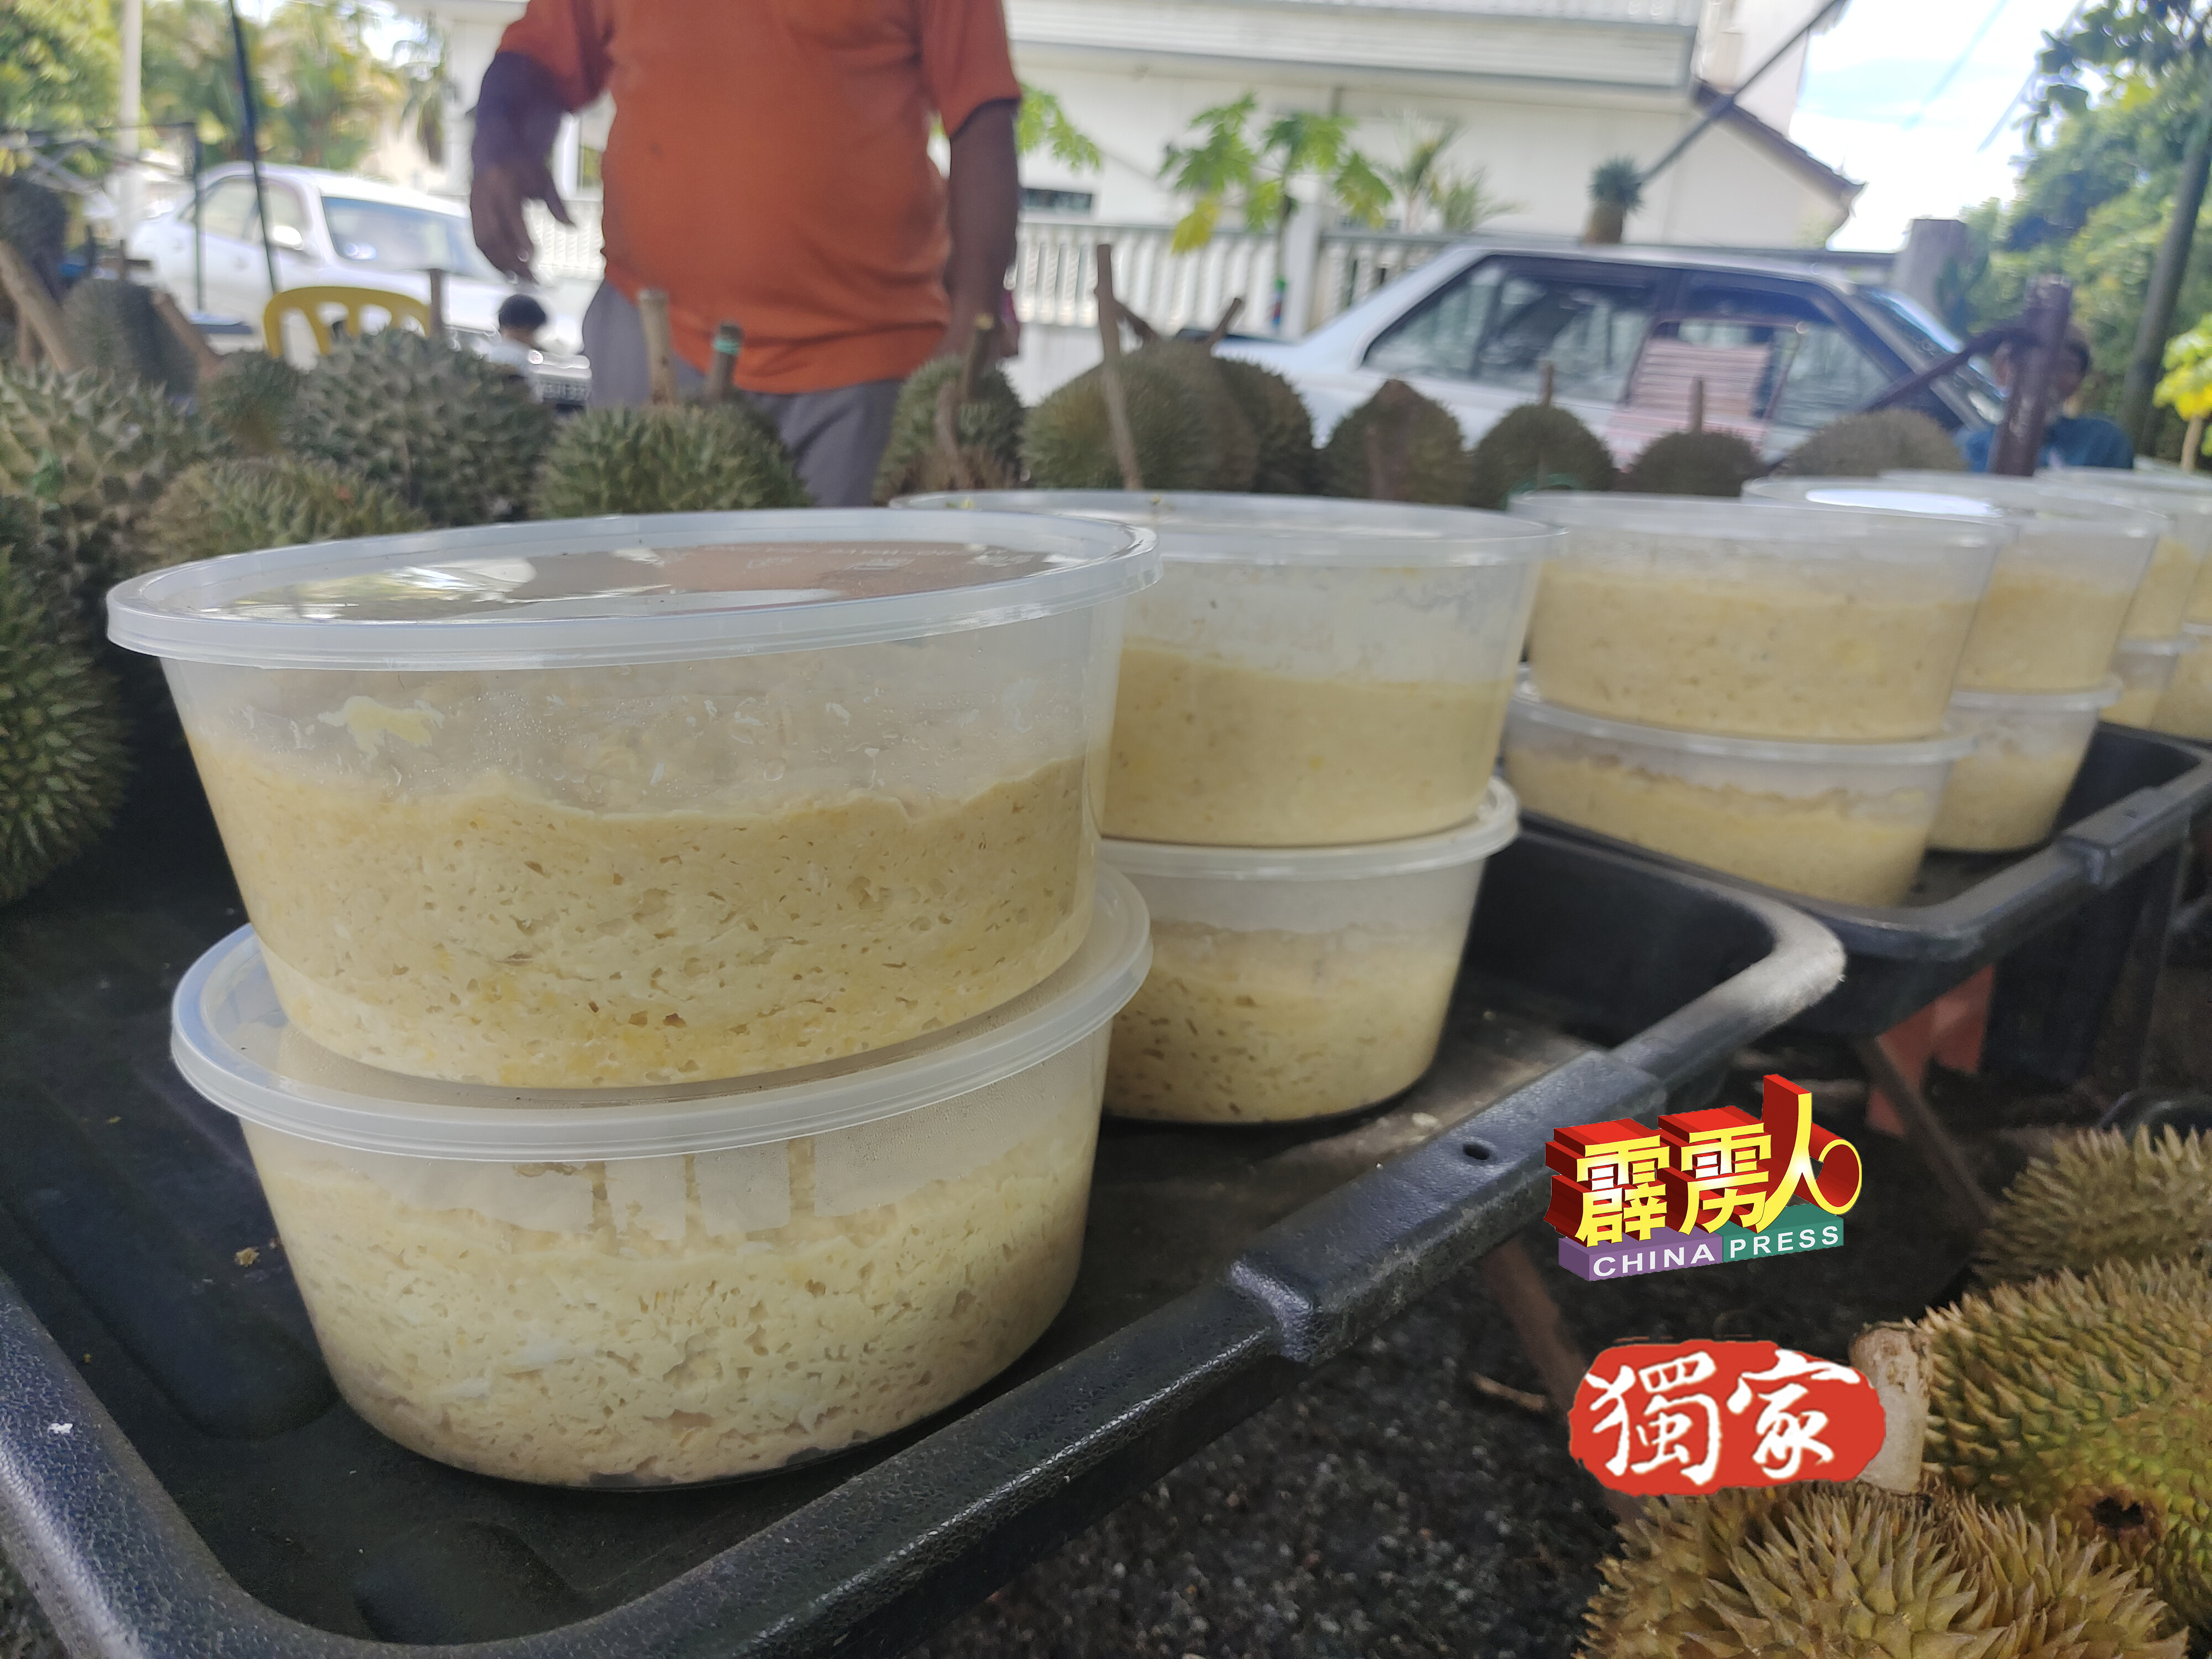 滞销的榴槤可制作成榴槤酱，每公斤售价30令吉。